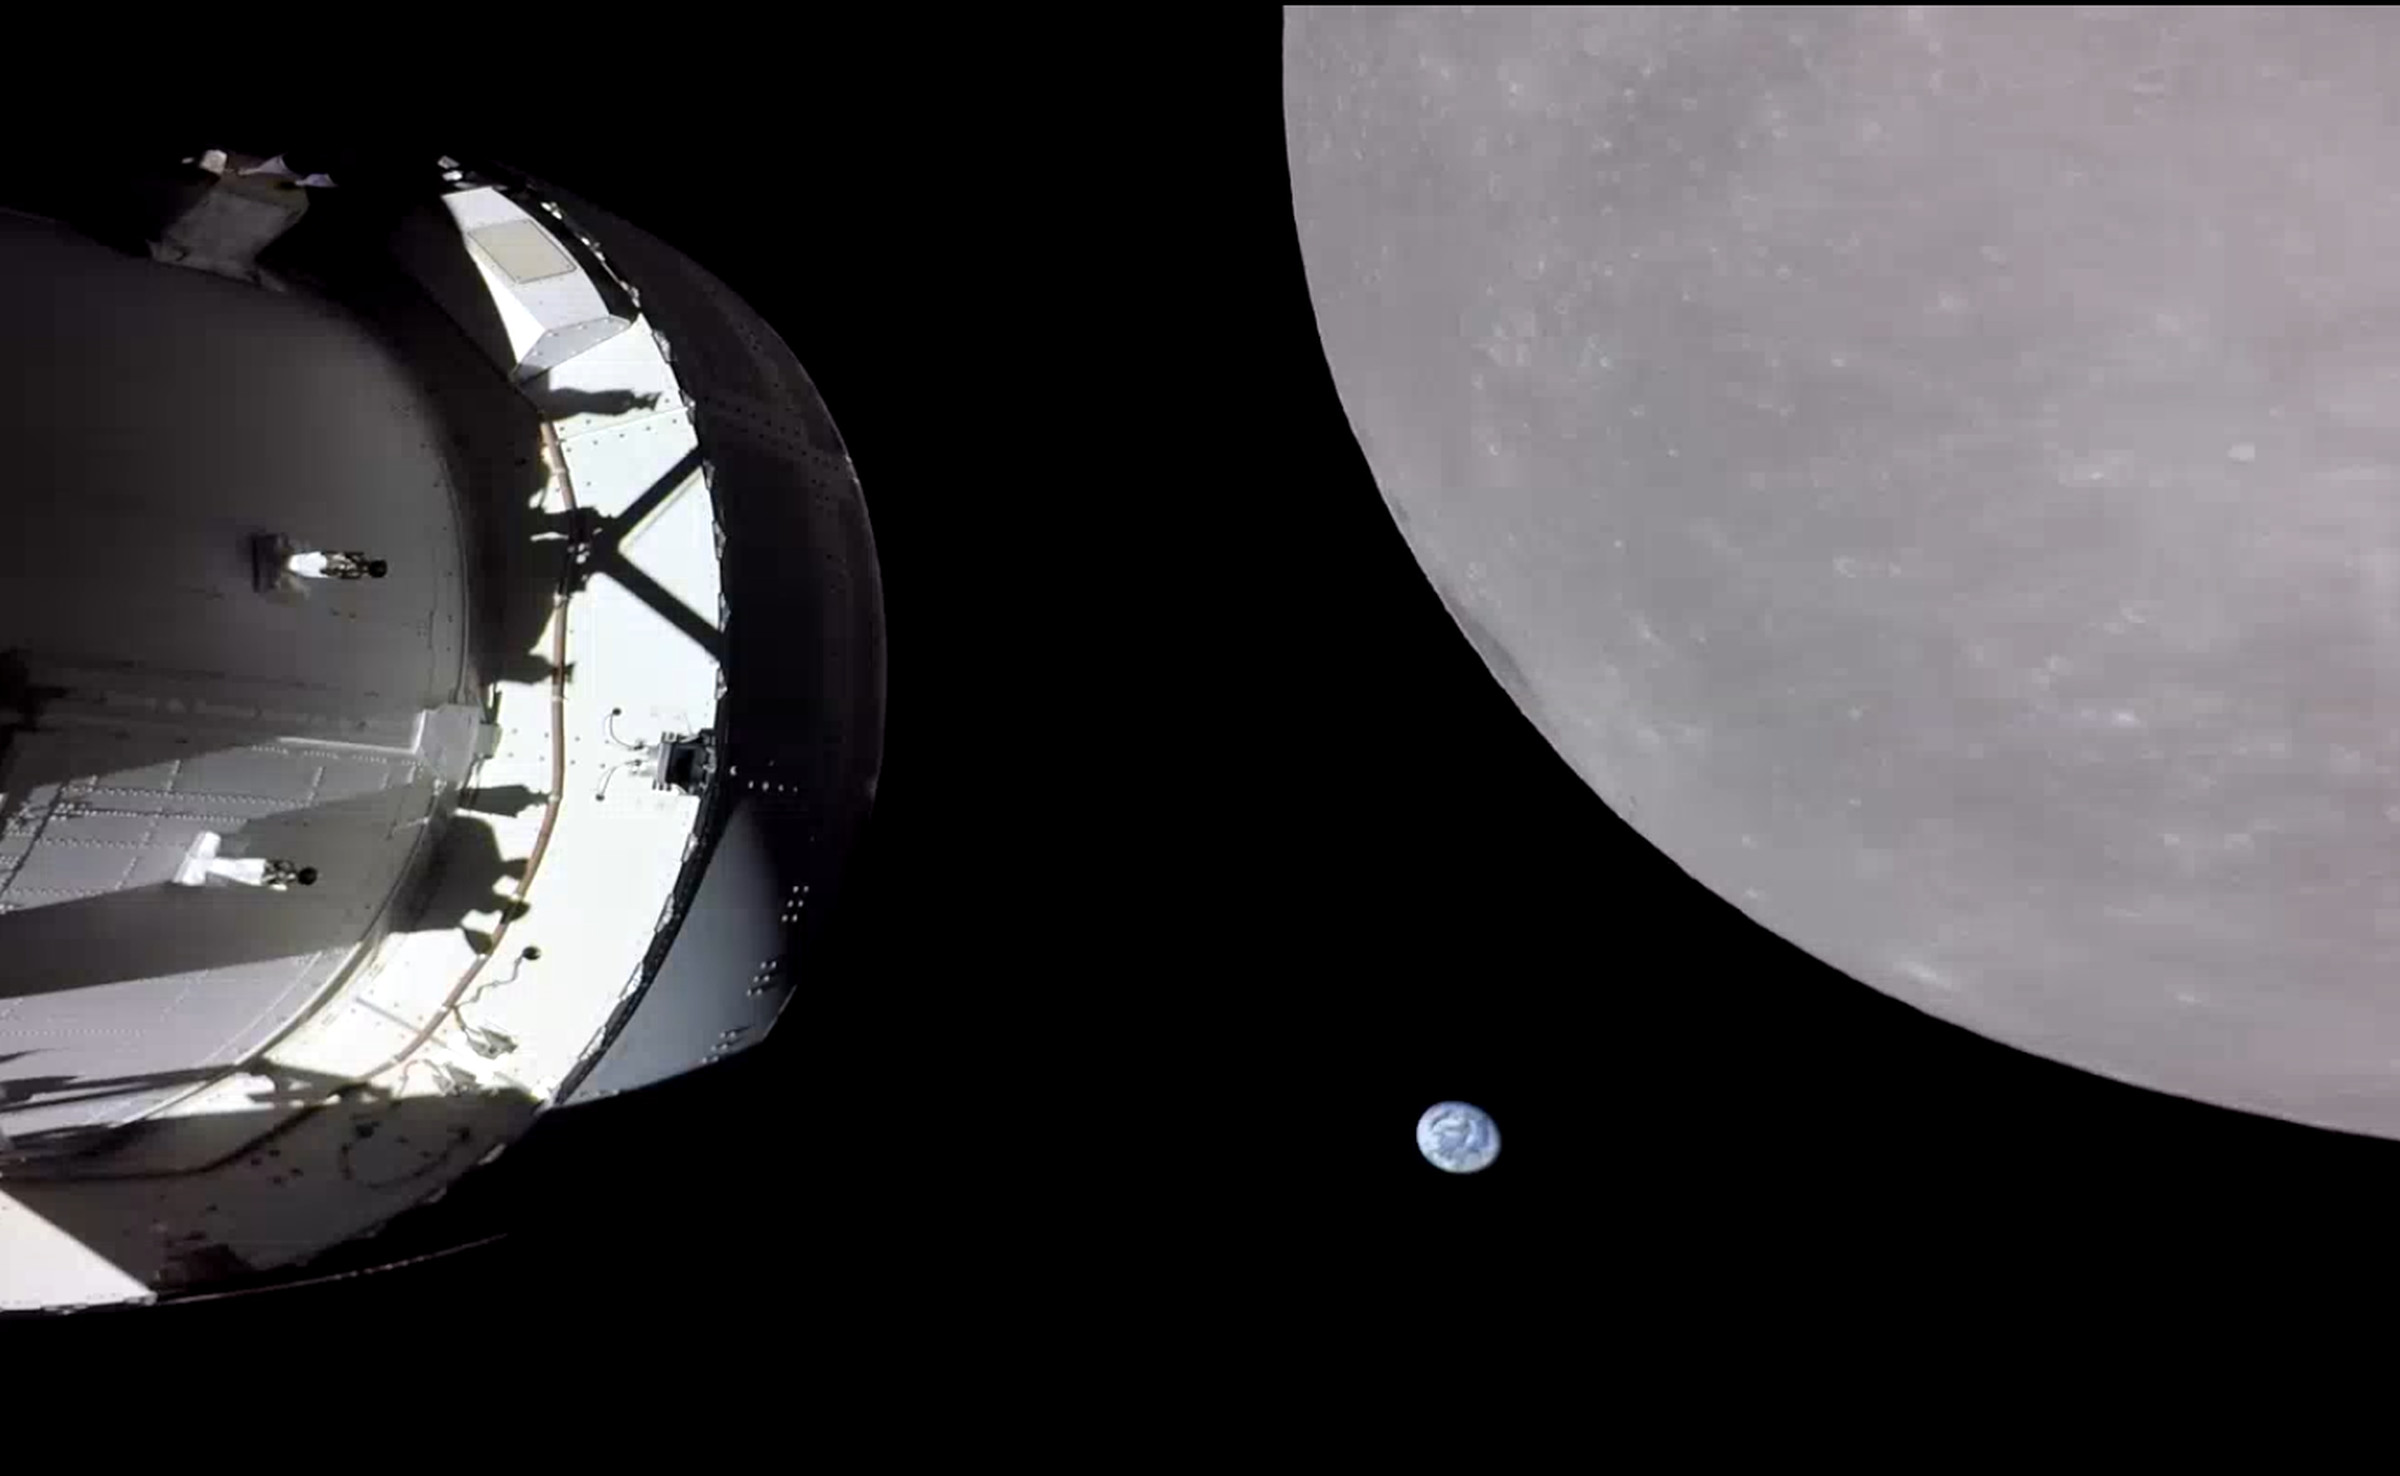 ओरियन कैप्सूल बाईं ओर छाया में बैठता है।  दाईं ओर, चंद्रमा का ग्रे बल्क छवि पर हावी है।  इन दोनों के बीच पृथ्वी एक छोटी नीली और सफेद गेंद के रूप में दिखाई देती है। 